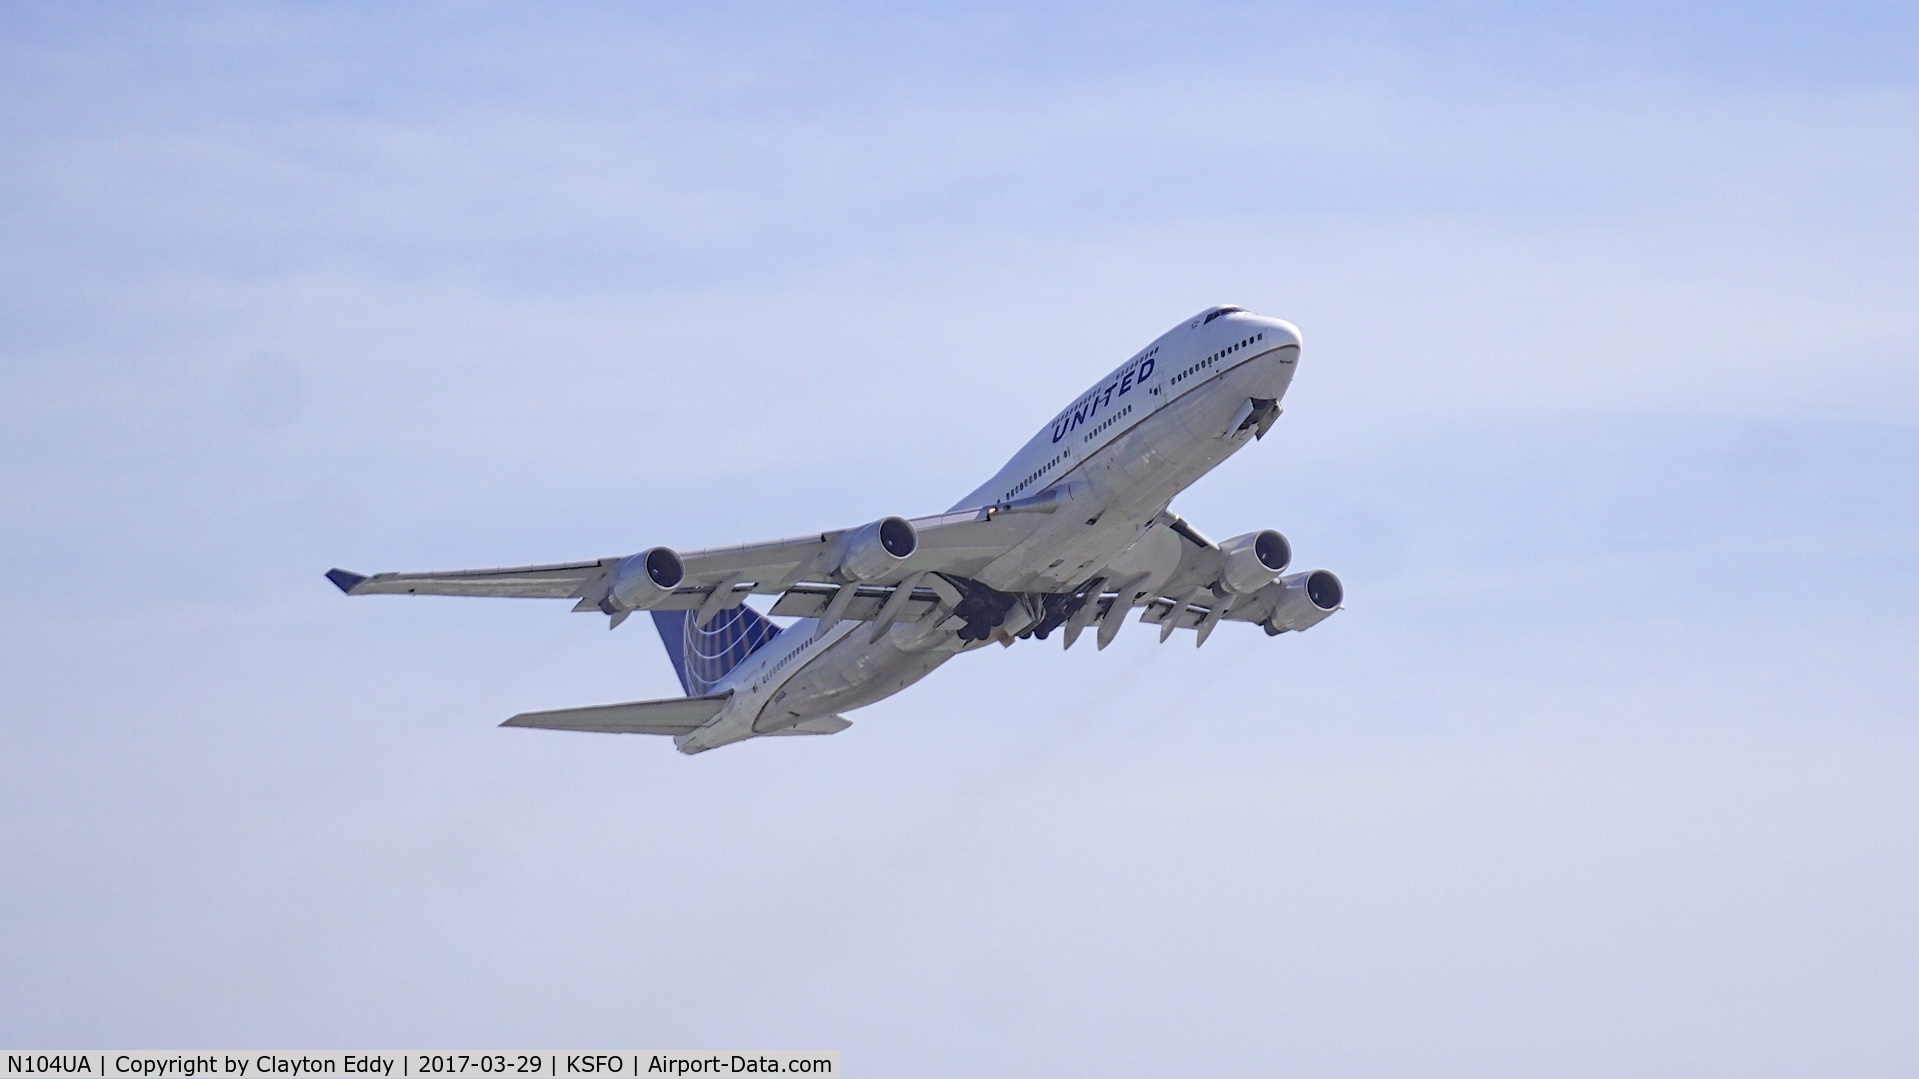 N104UA, 1998 Boeing 747-422 C/N 26902, Departing runway 28 at SFO.